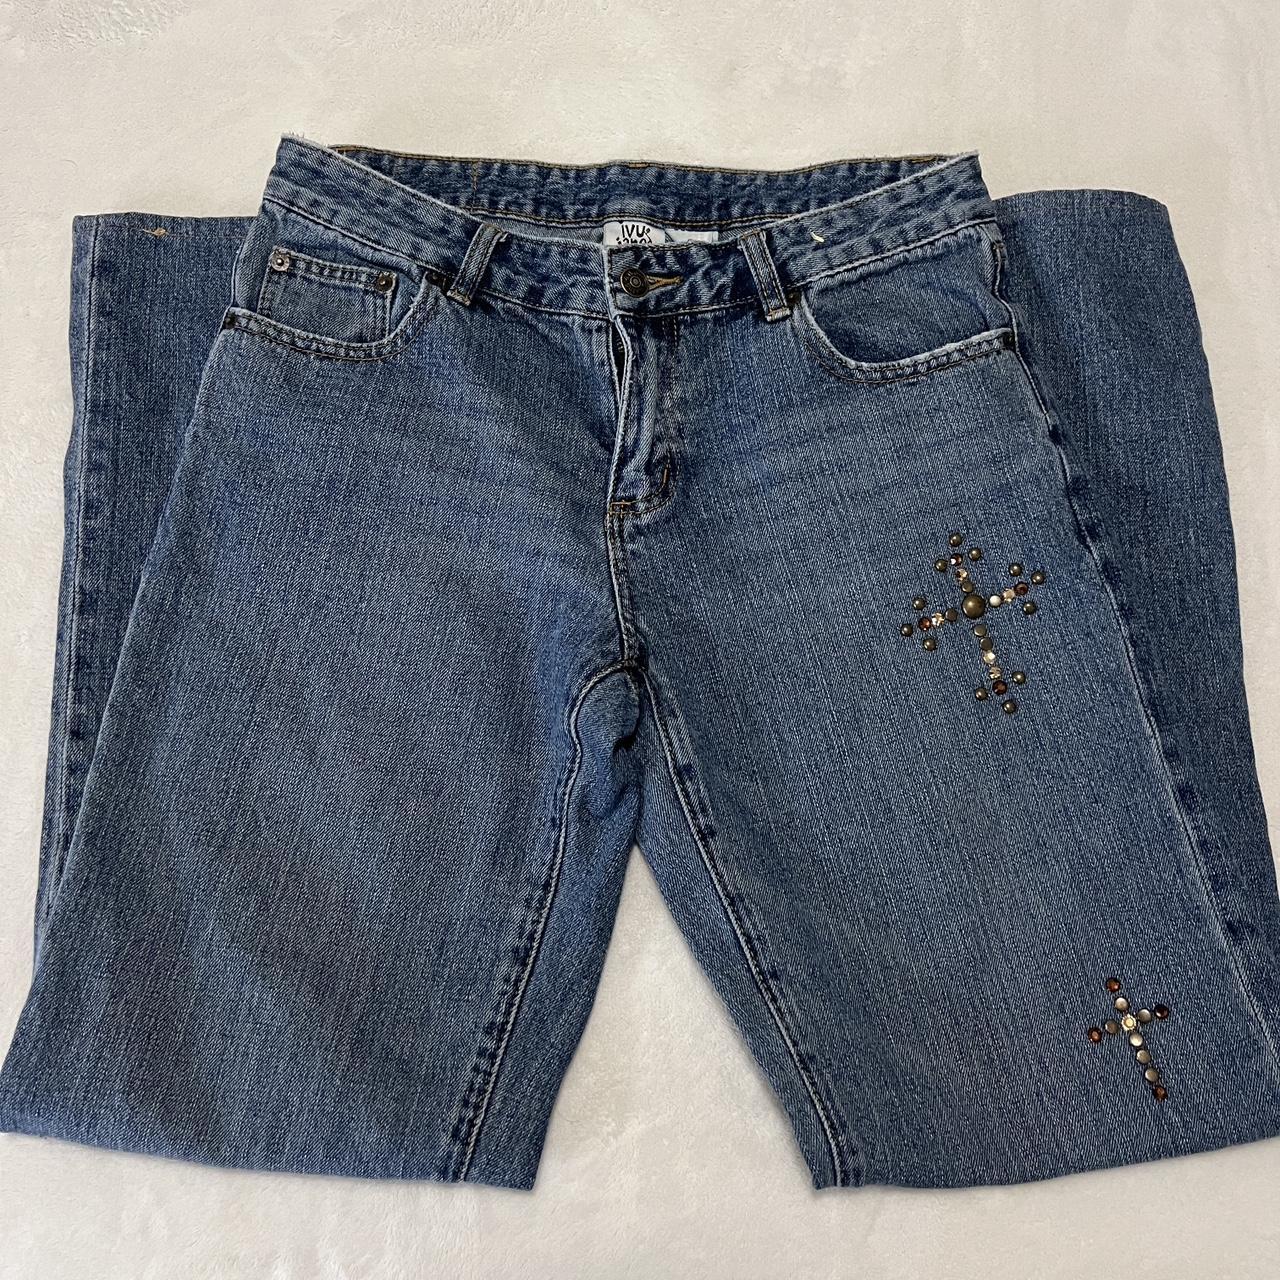 vintage rhinestone cross jeans -size 6 -cross... - Depop